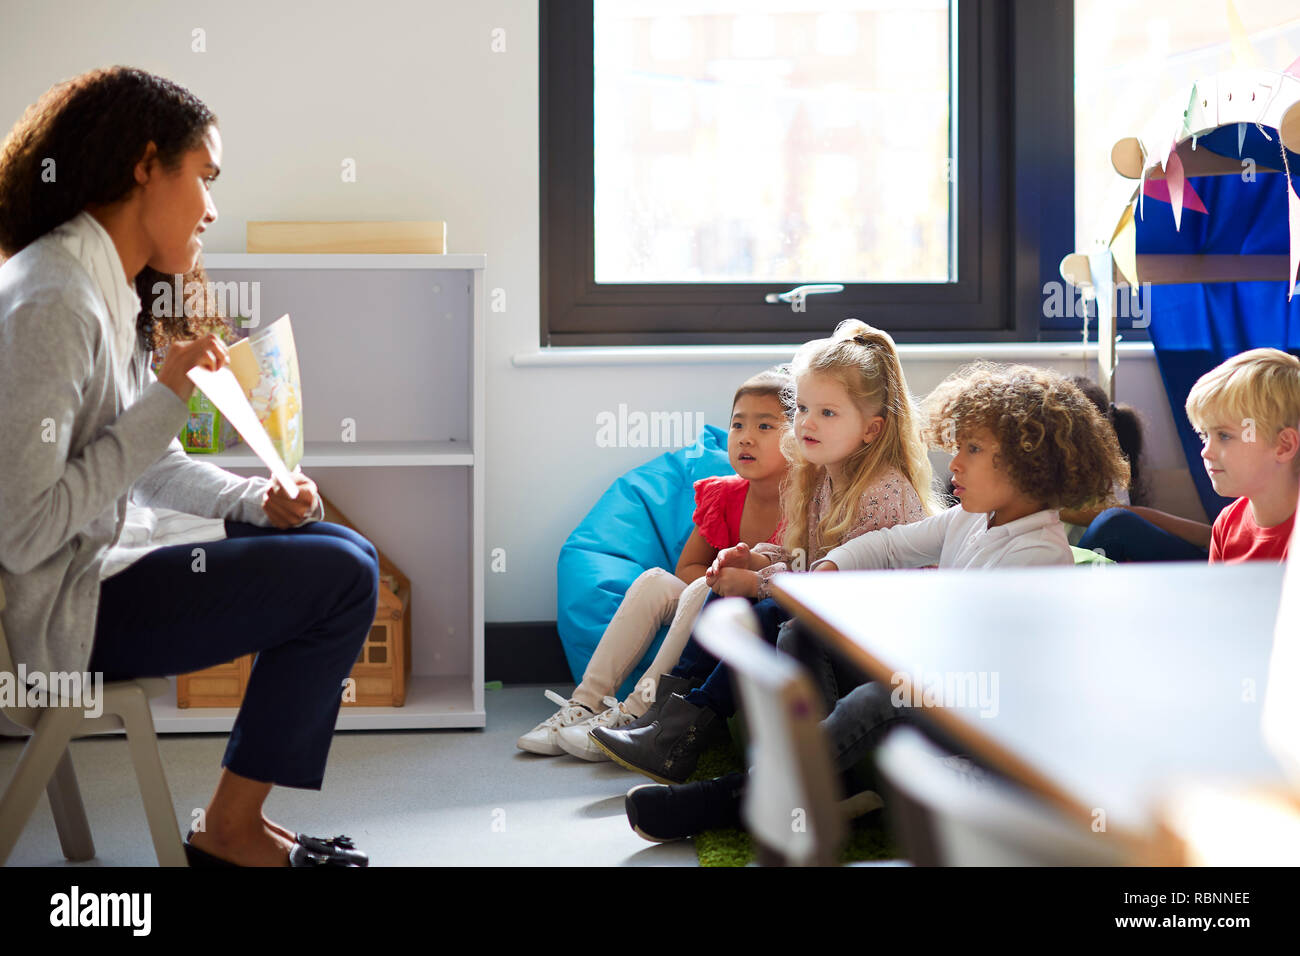 Vue latérale d'un enseignant de maternelle femme assise sur une chaise montrant un livre pour enfants dans une salle de classe Banque D'Images